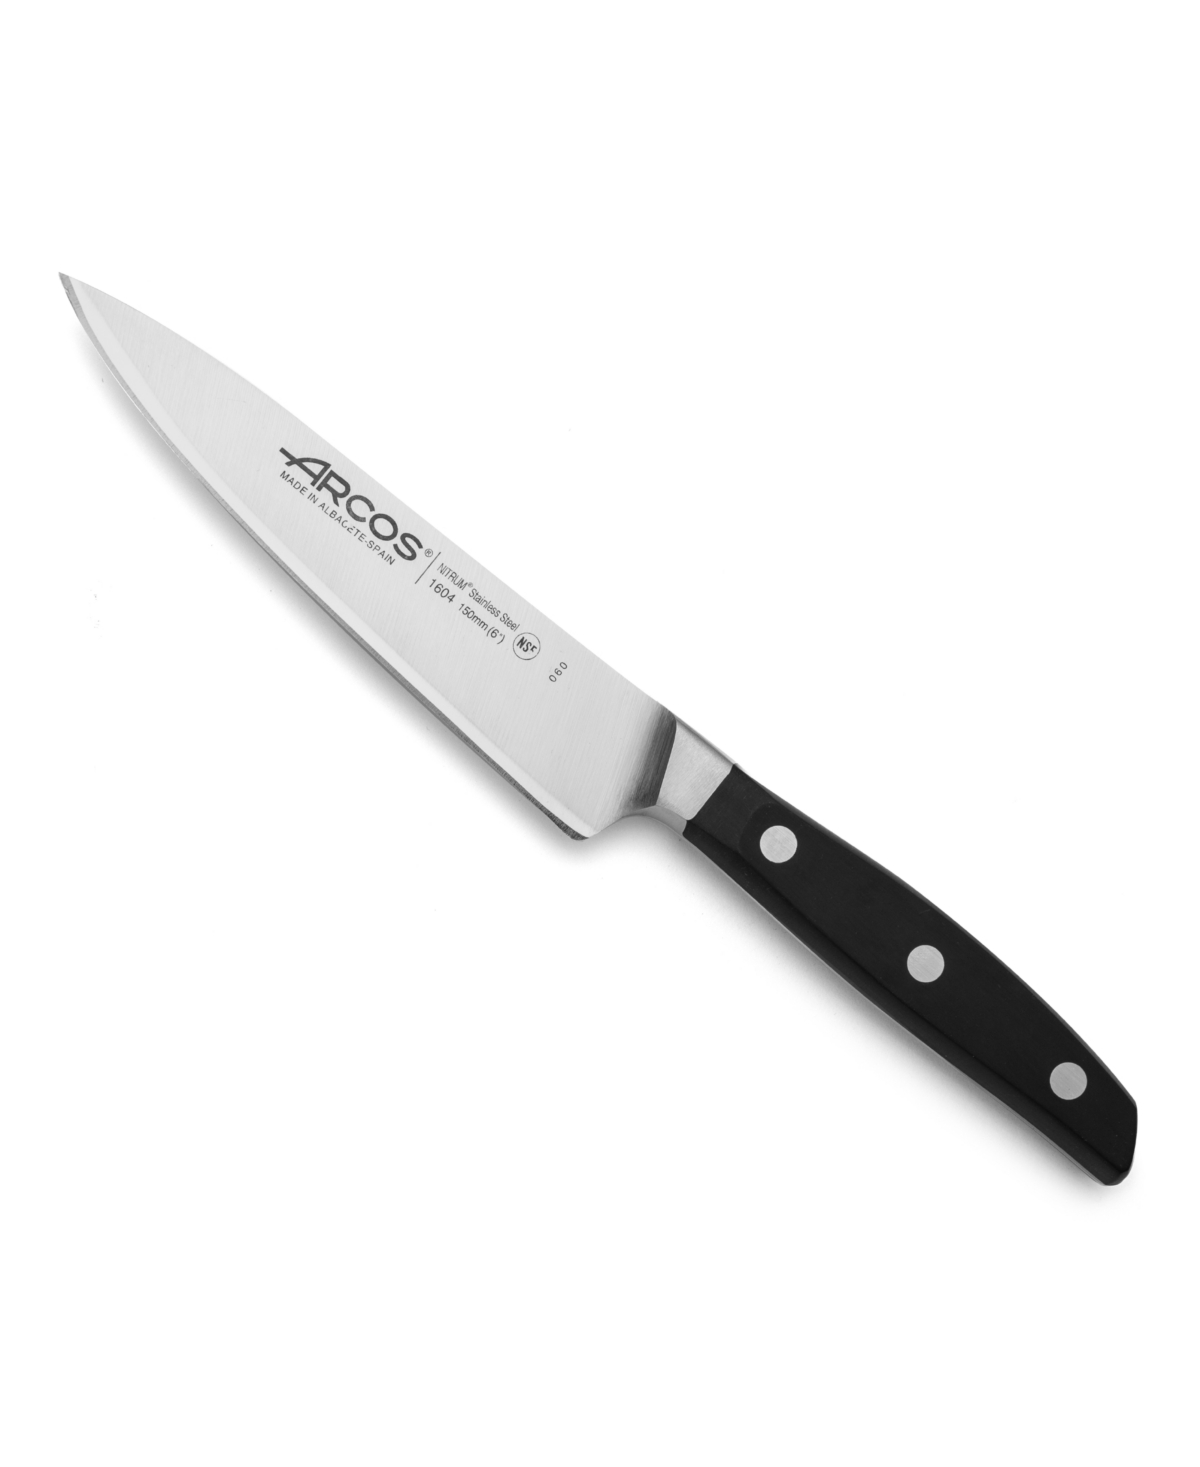 Arcos Manhattan 6" Utility Knife Cutlery In Black